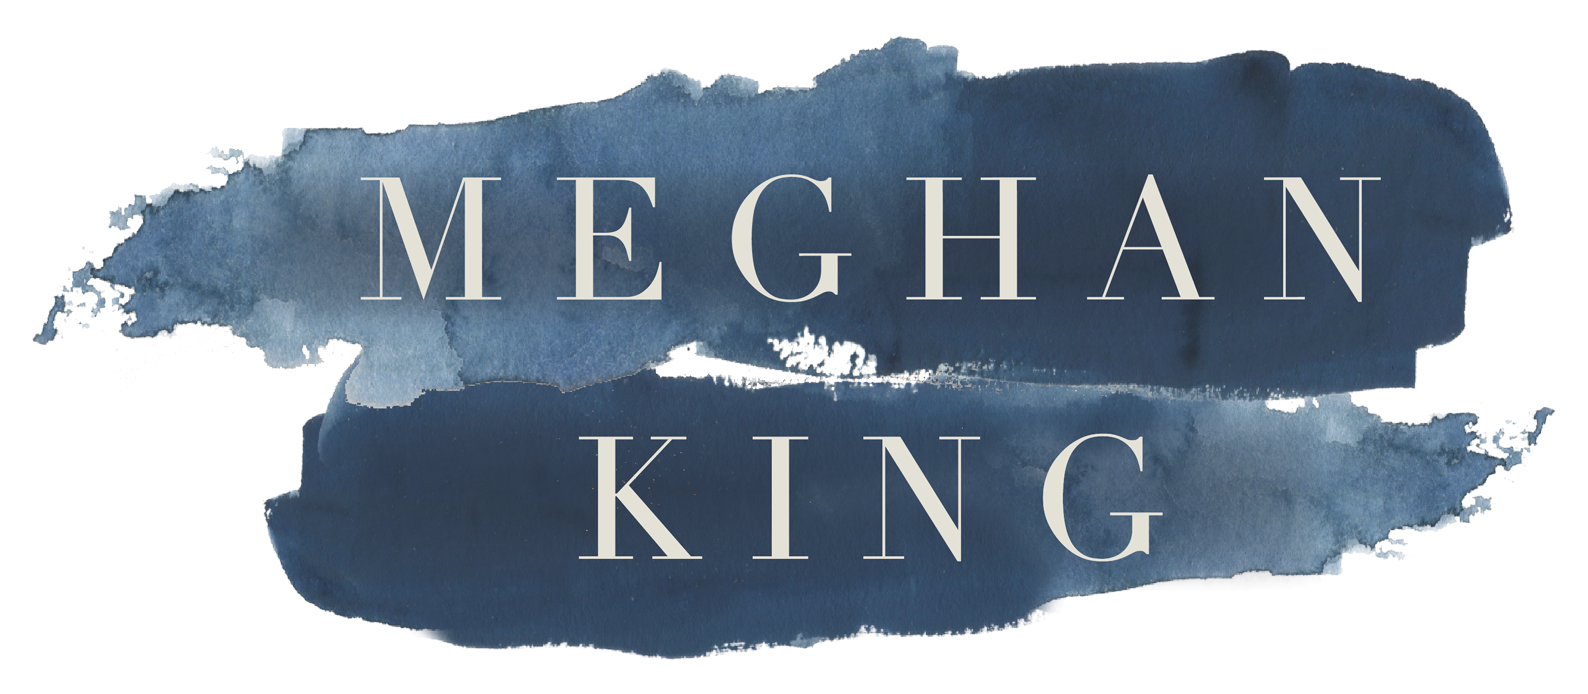 Meghan King